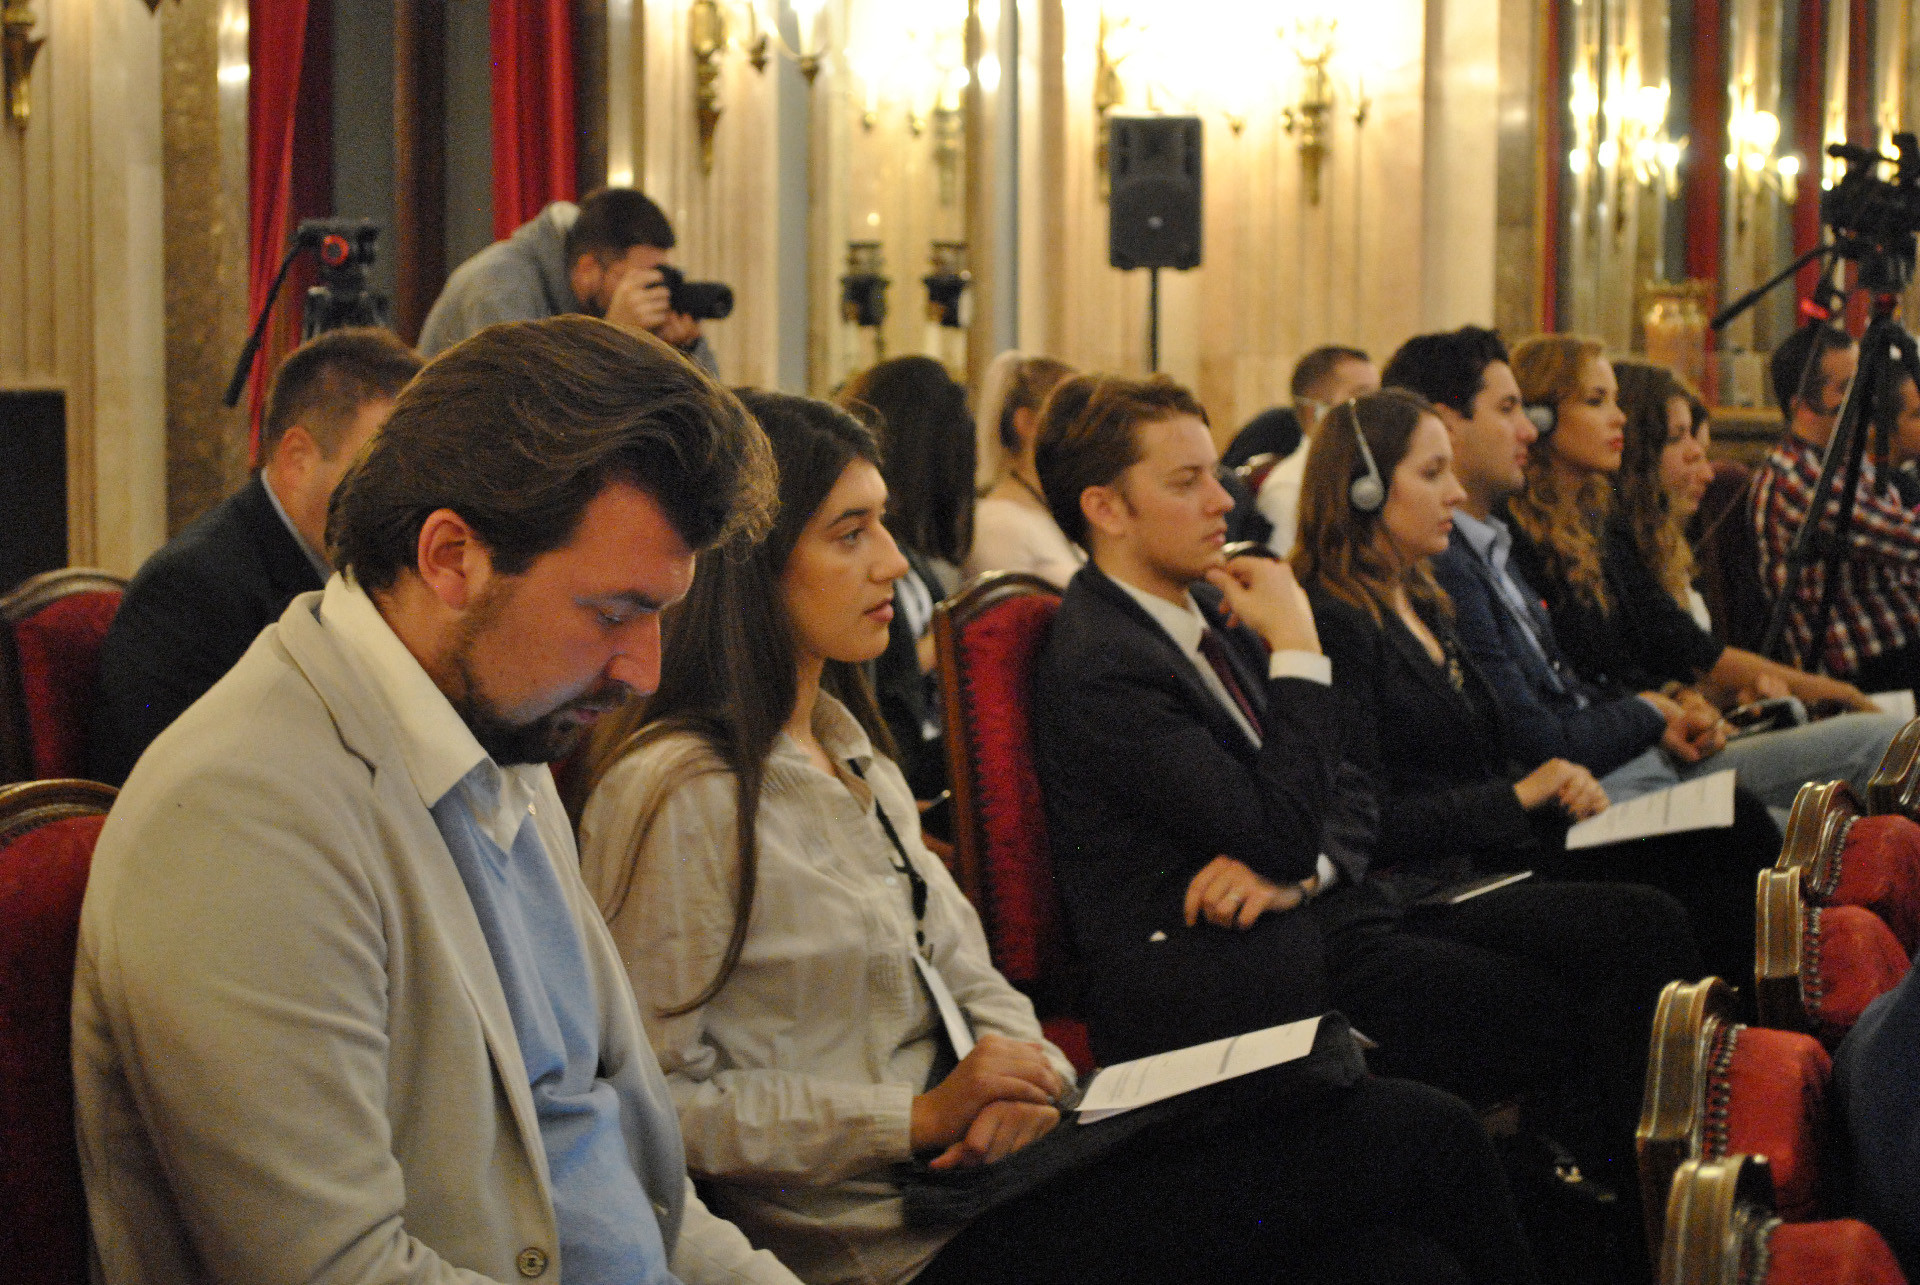 Конференција младих лидера Русије и Србије